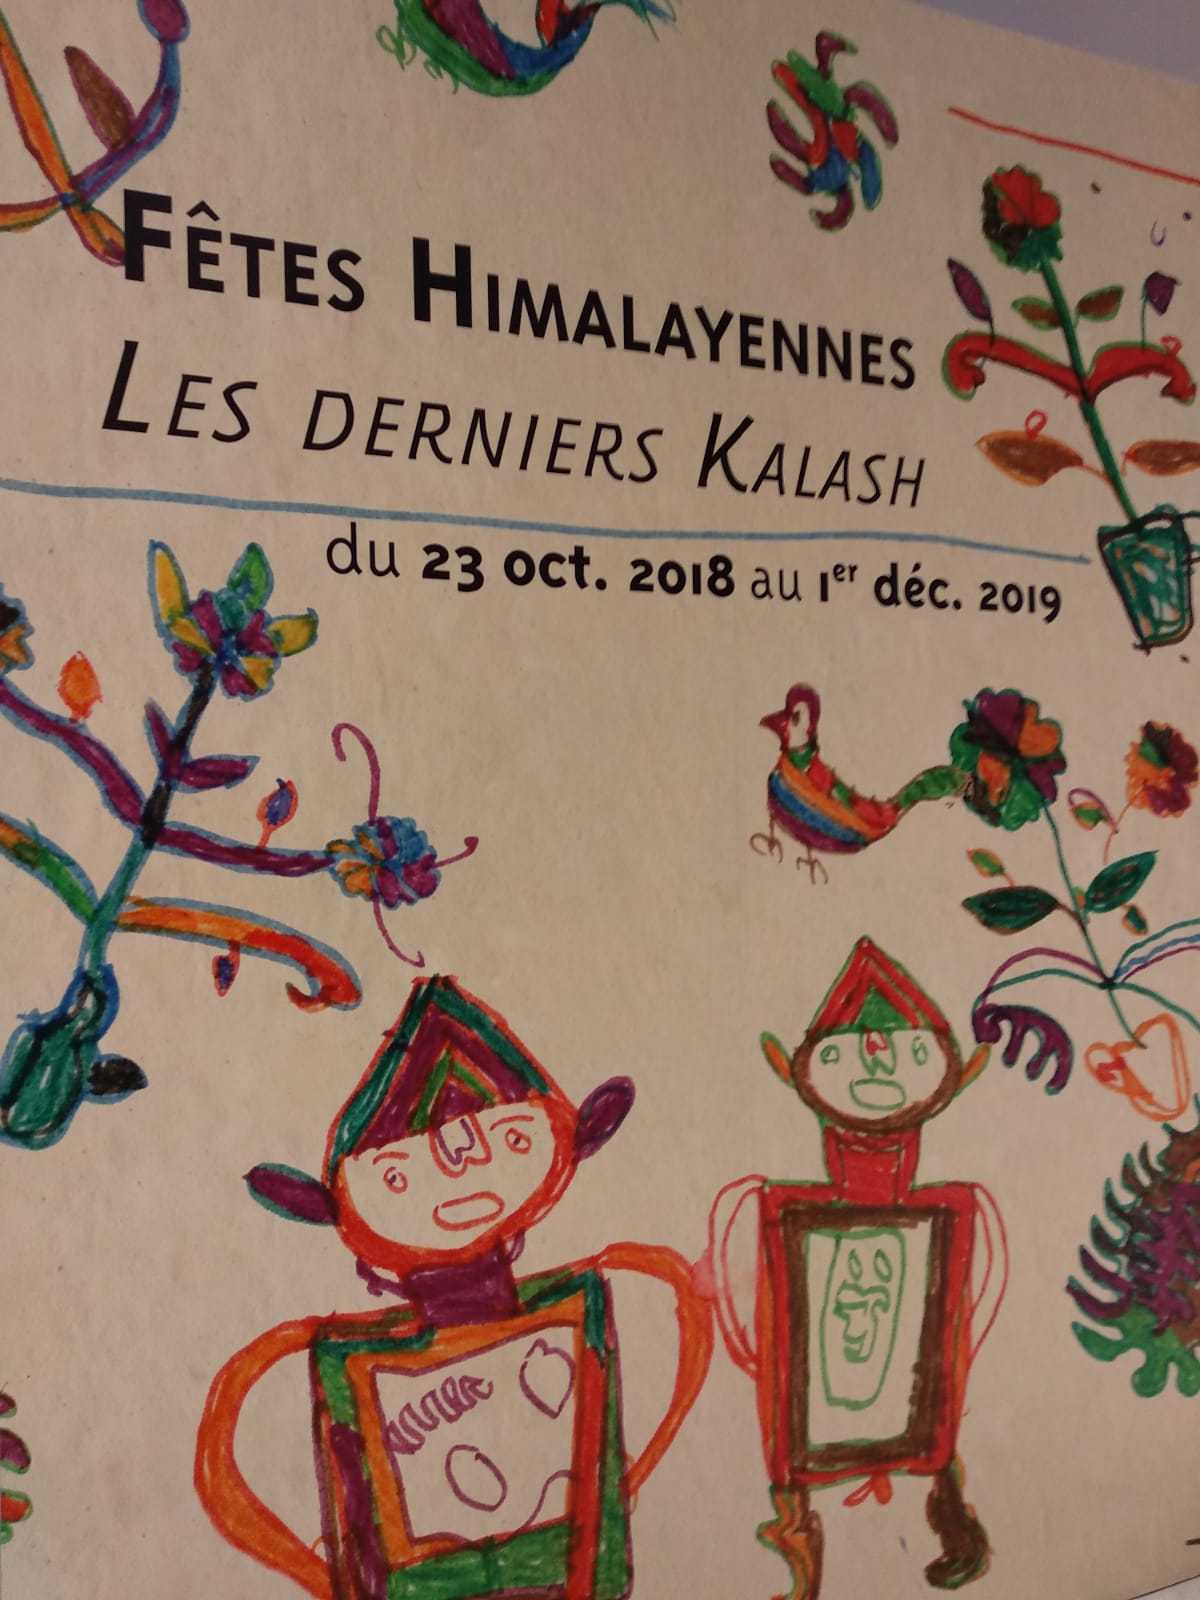 Fêtes himalayennes les derniers Kalash, Musée des Confluences, Lyon: 23 January 2018-1 December 2019